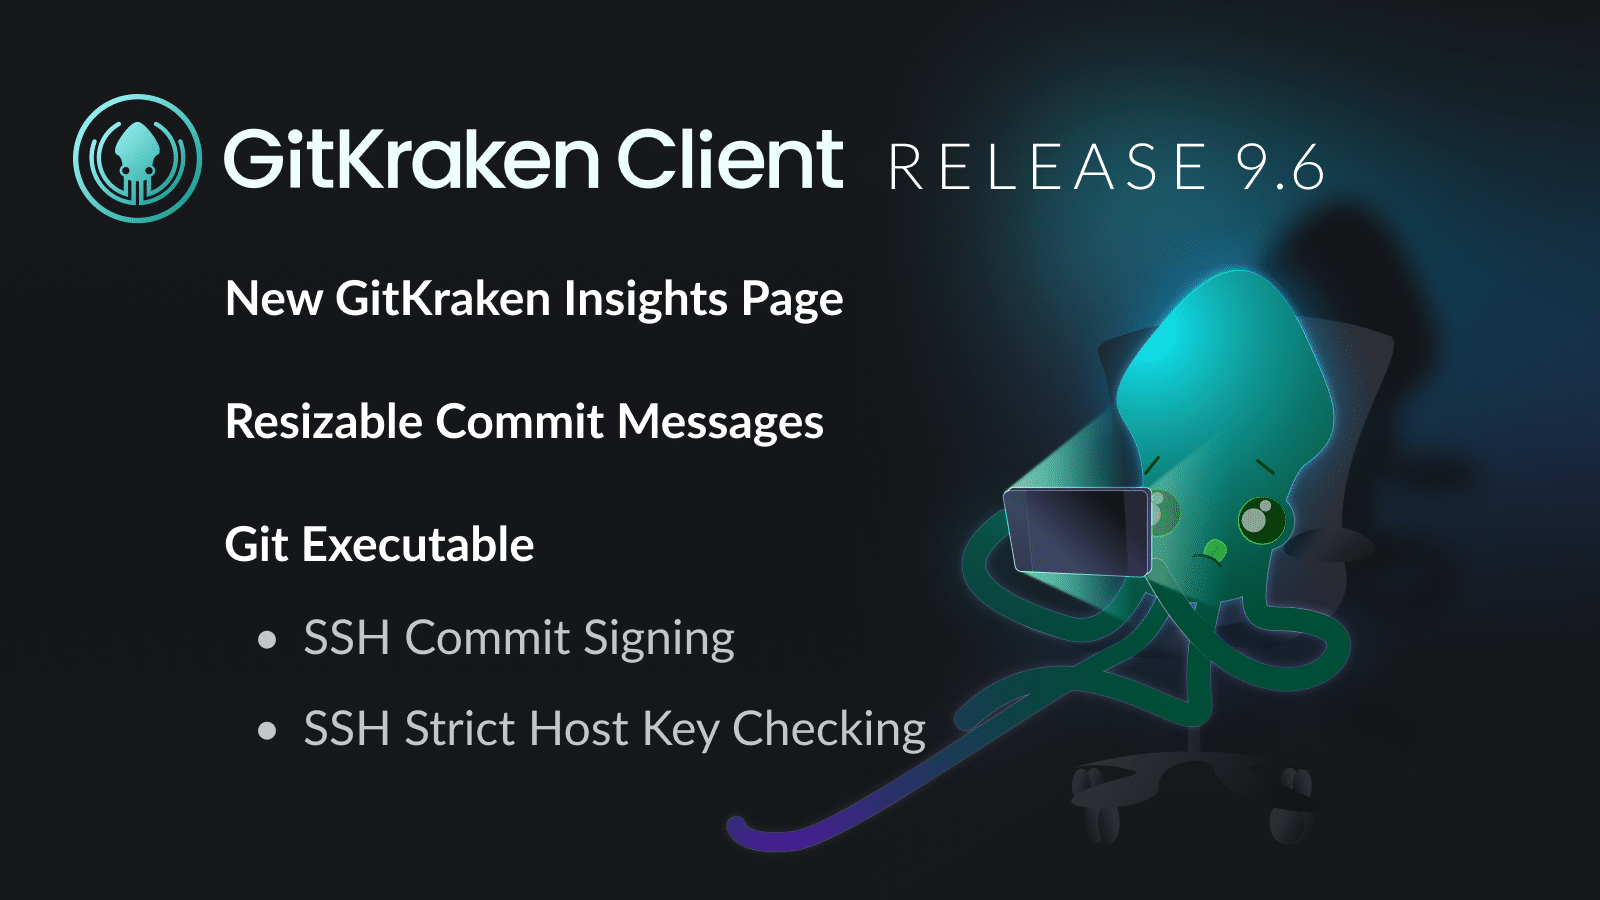 GitKraken Client Release 9.6